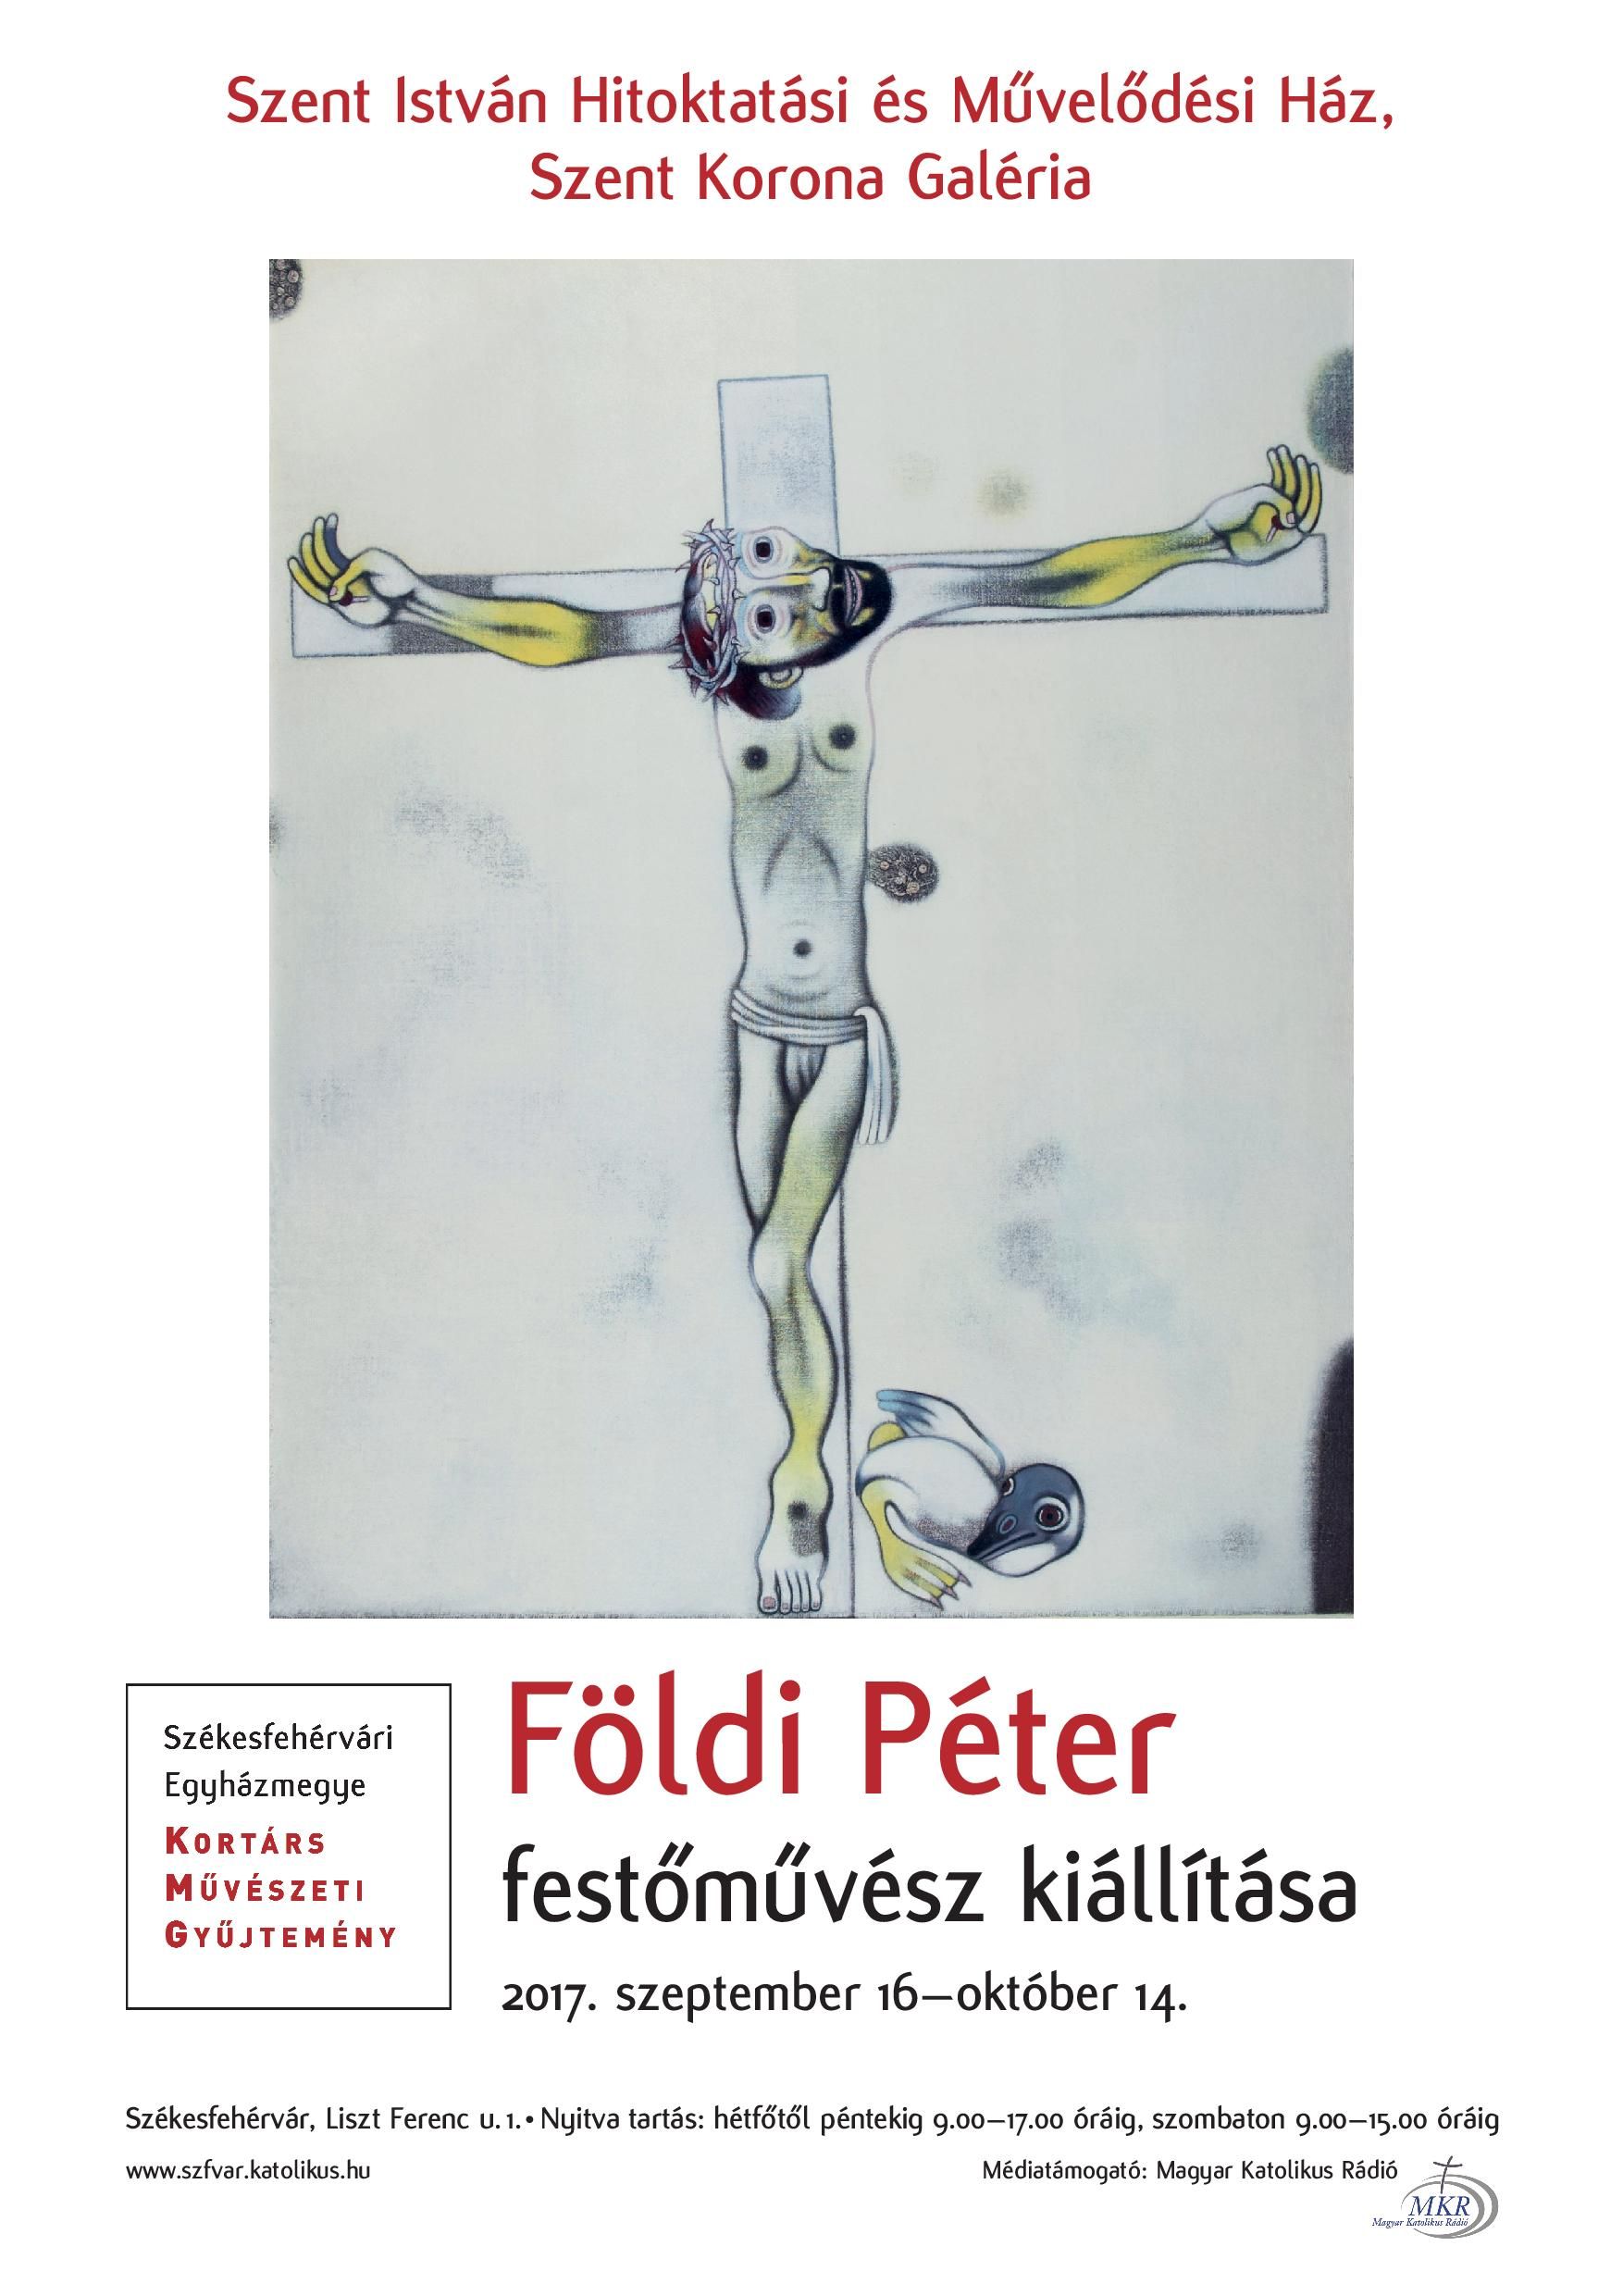 Földi Péter festőművész kiállítása nyílik meg az Ars Sacra Fesztiválon